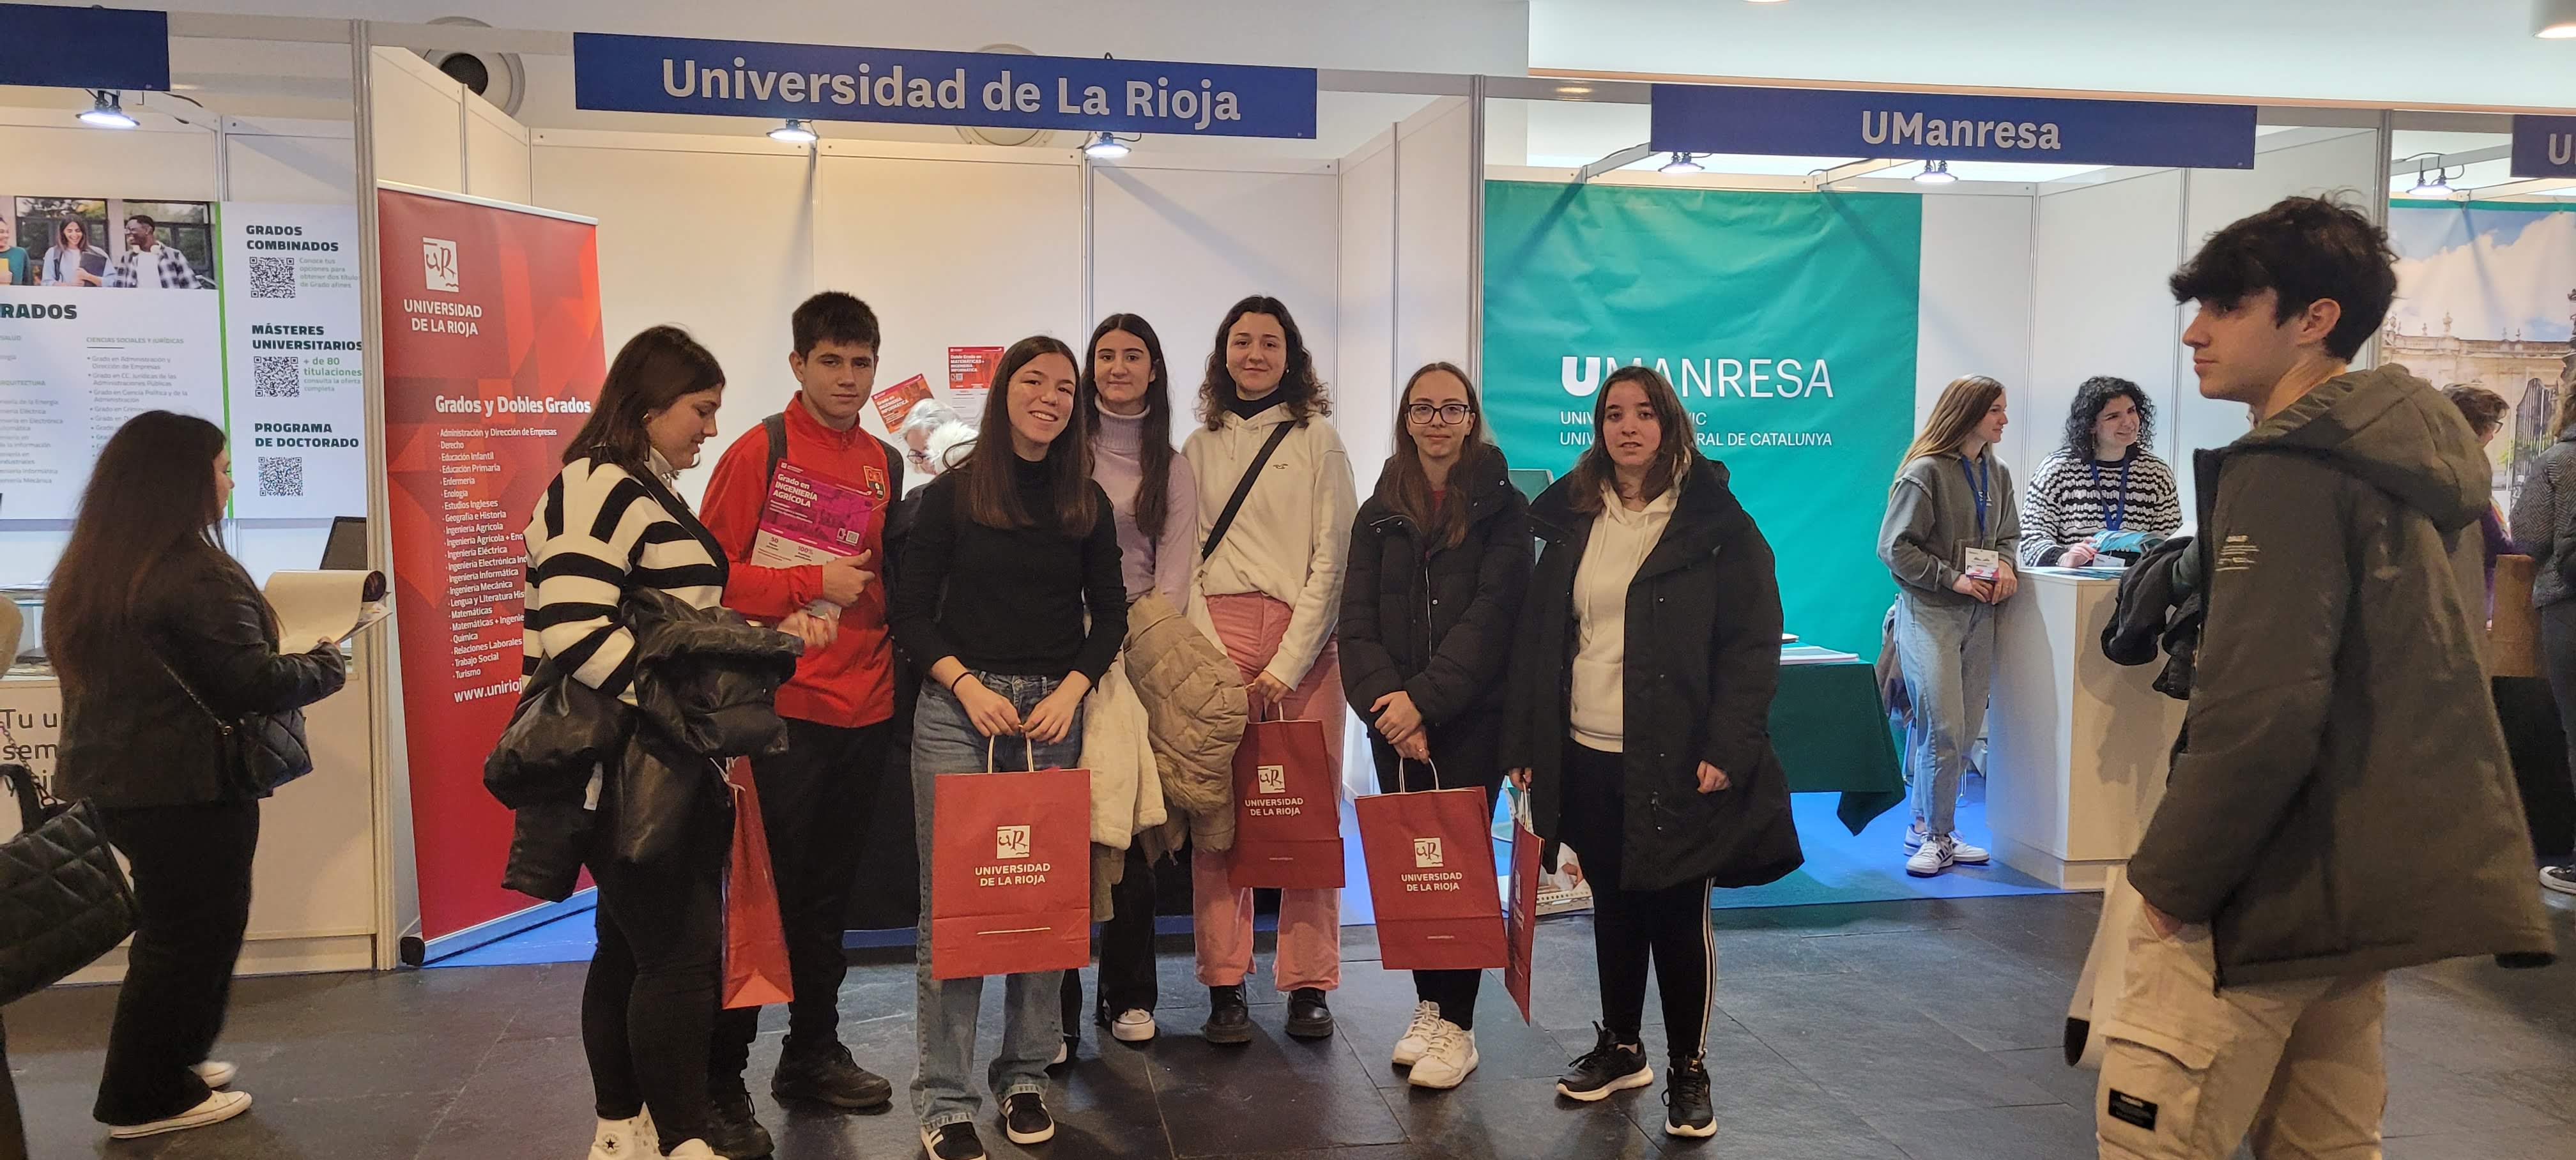 Los alumnos de 4º de ESO de nuestro centro educativo disfrutaron de una enriquecedora experiencia en el Salón del Estudiante celebrado en Pamplona.